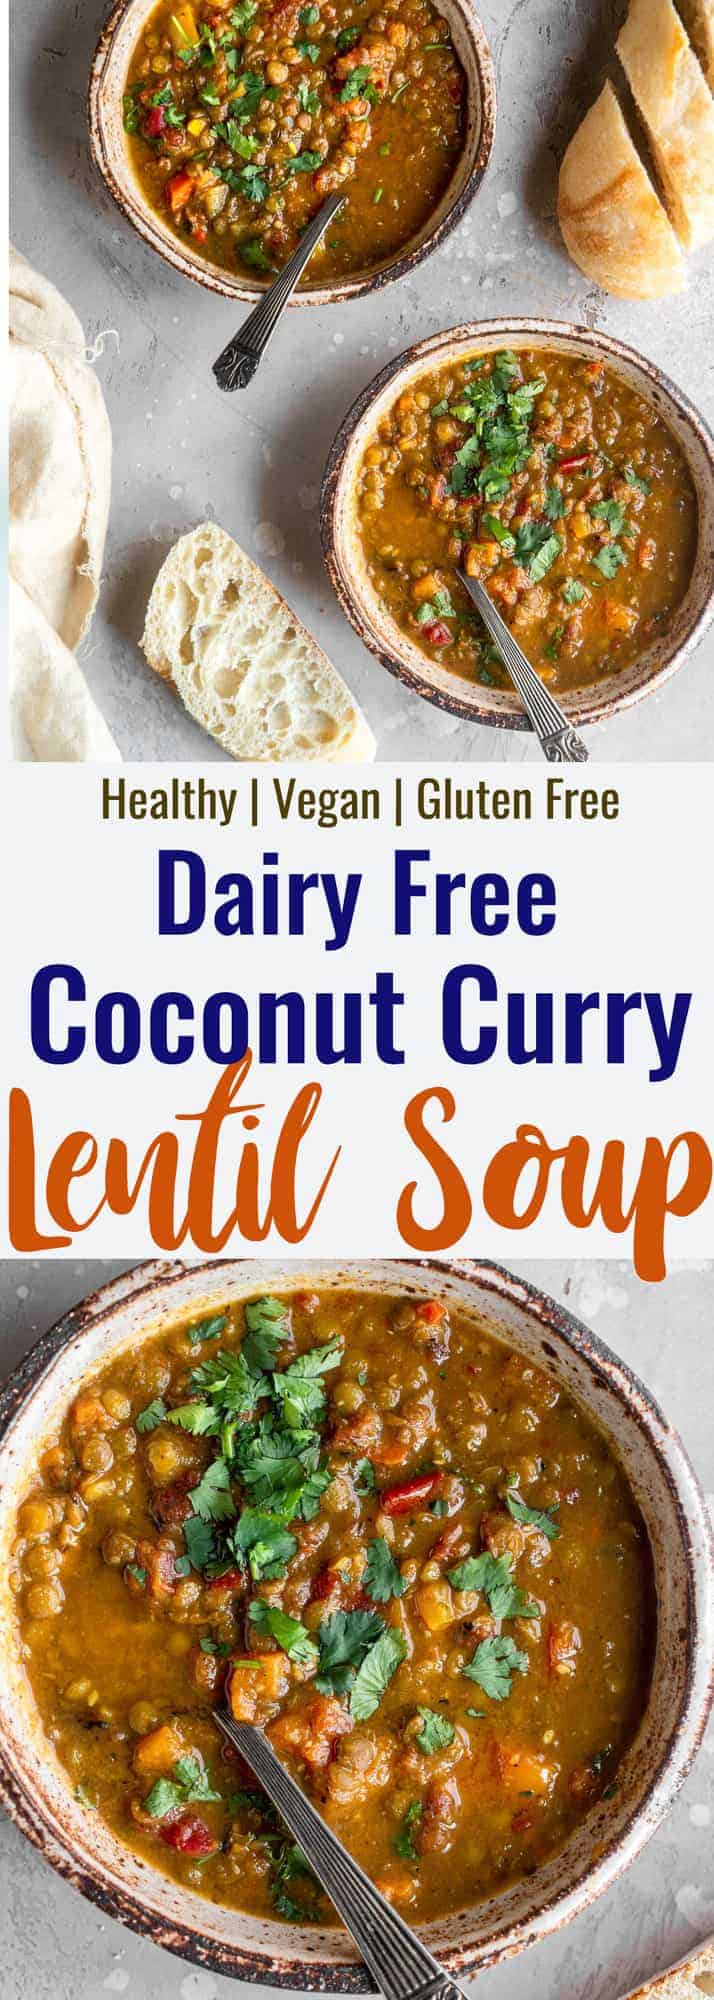 curry lentil soup collage photo